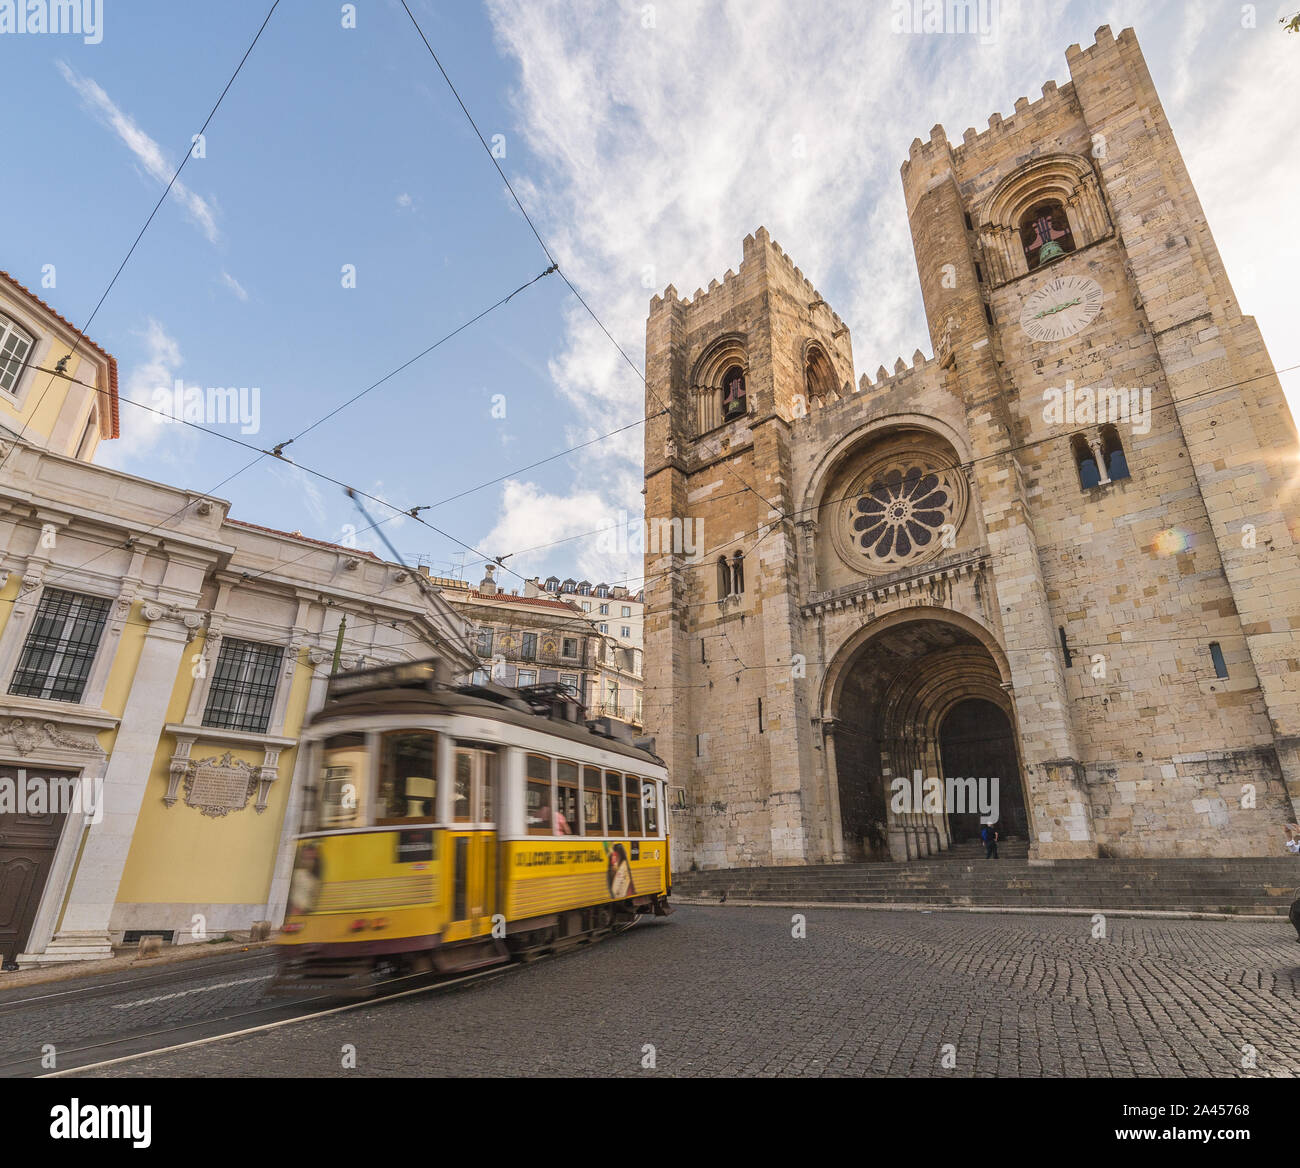 Lisbona, Portogallo - 11AGOSTO 2019: Cattedrale di Lisbona e un tram giallo durante la mattina. La gente può essere visto. Foto Stock